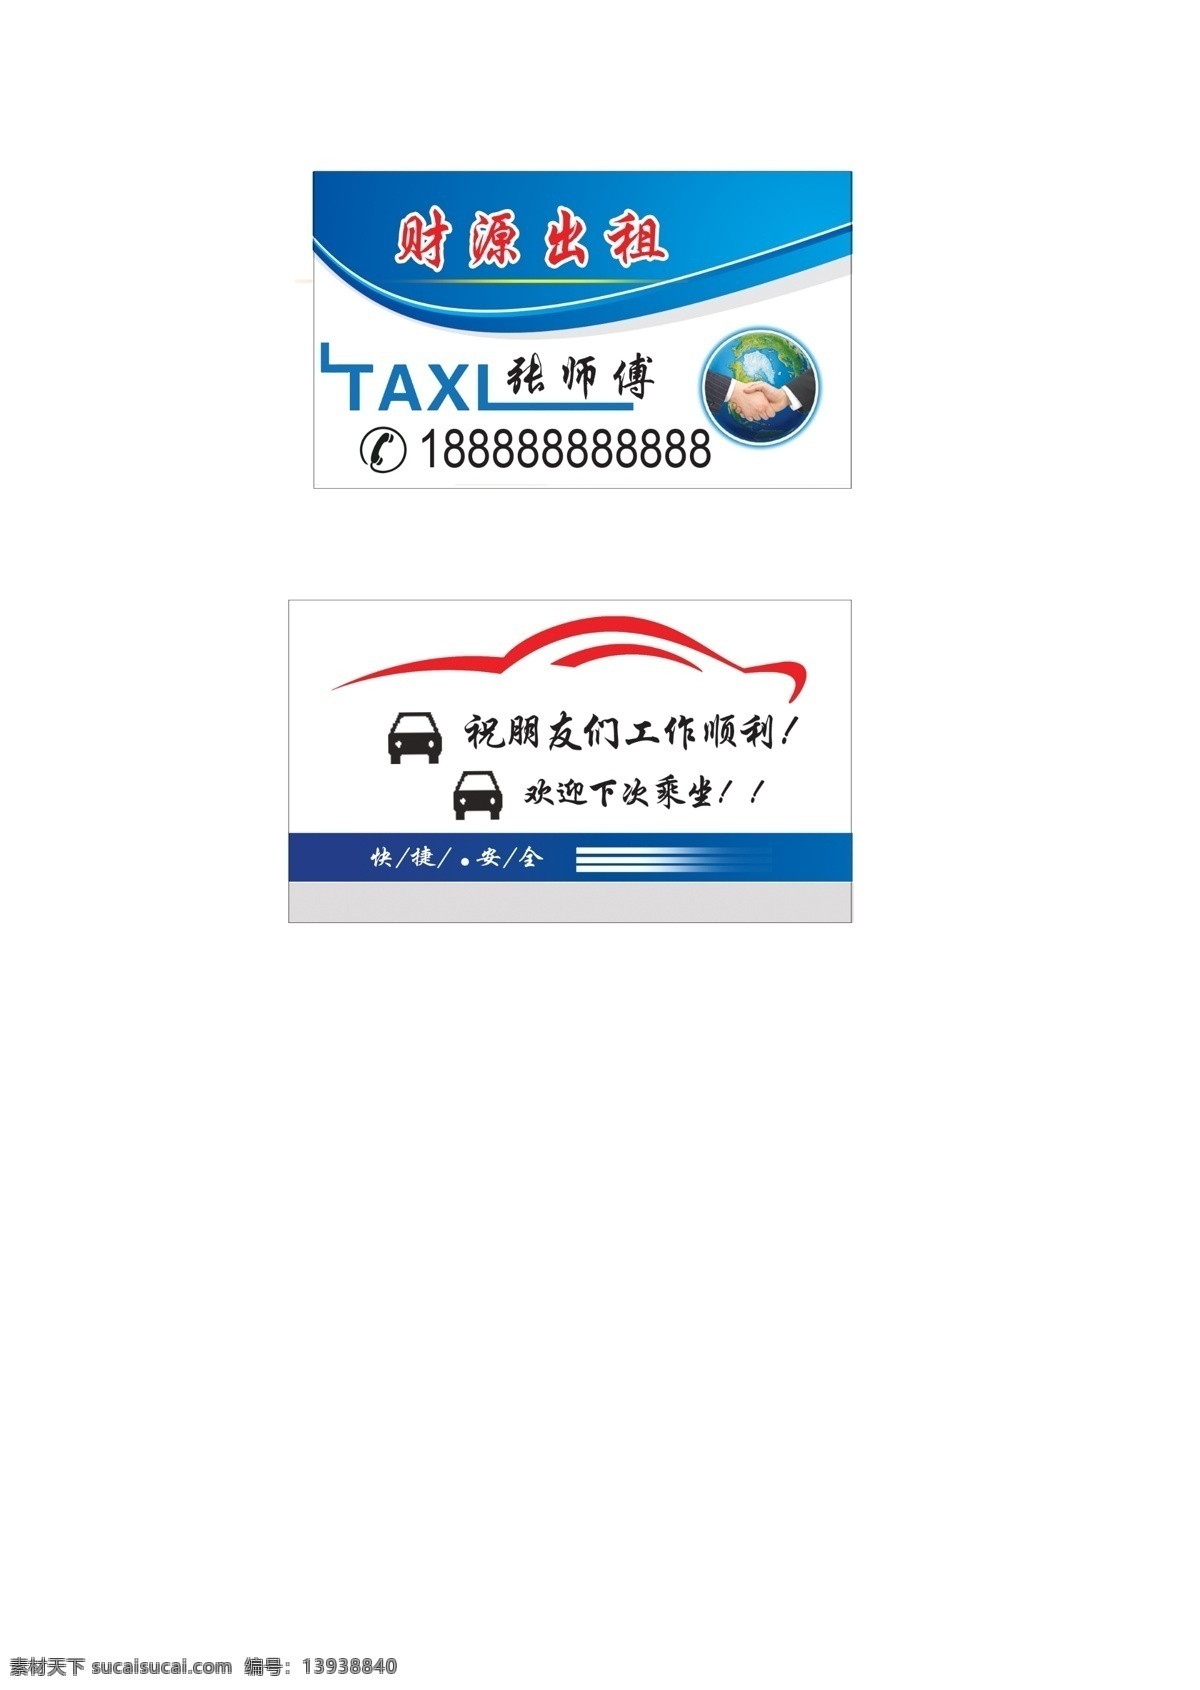 出租车名片 taxl 出租 握手合作 车的图标 出租车车框架 车外形 分层